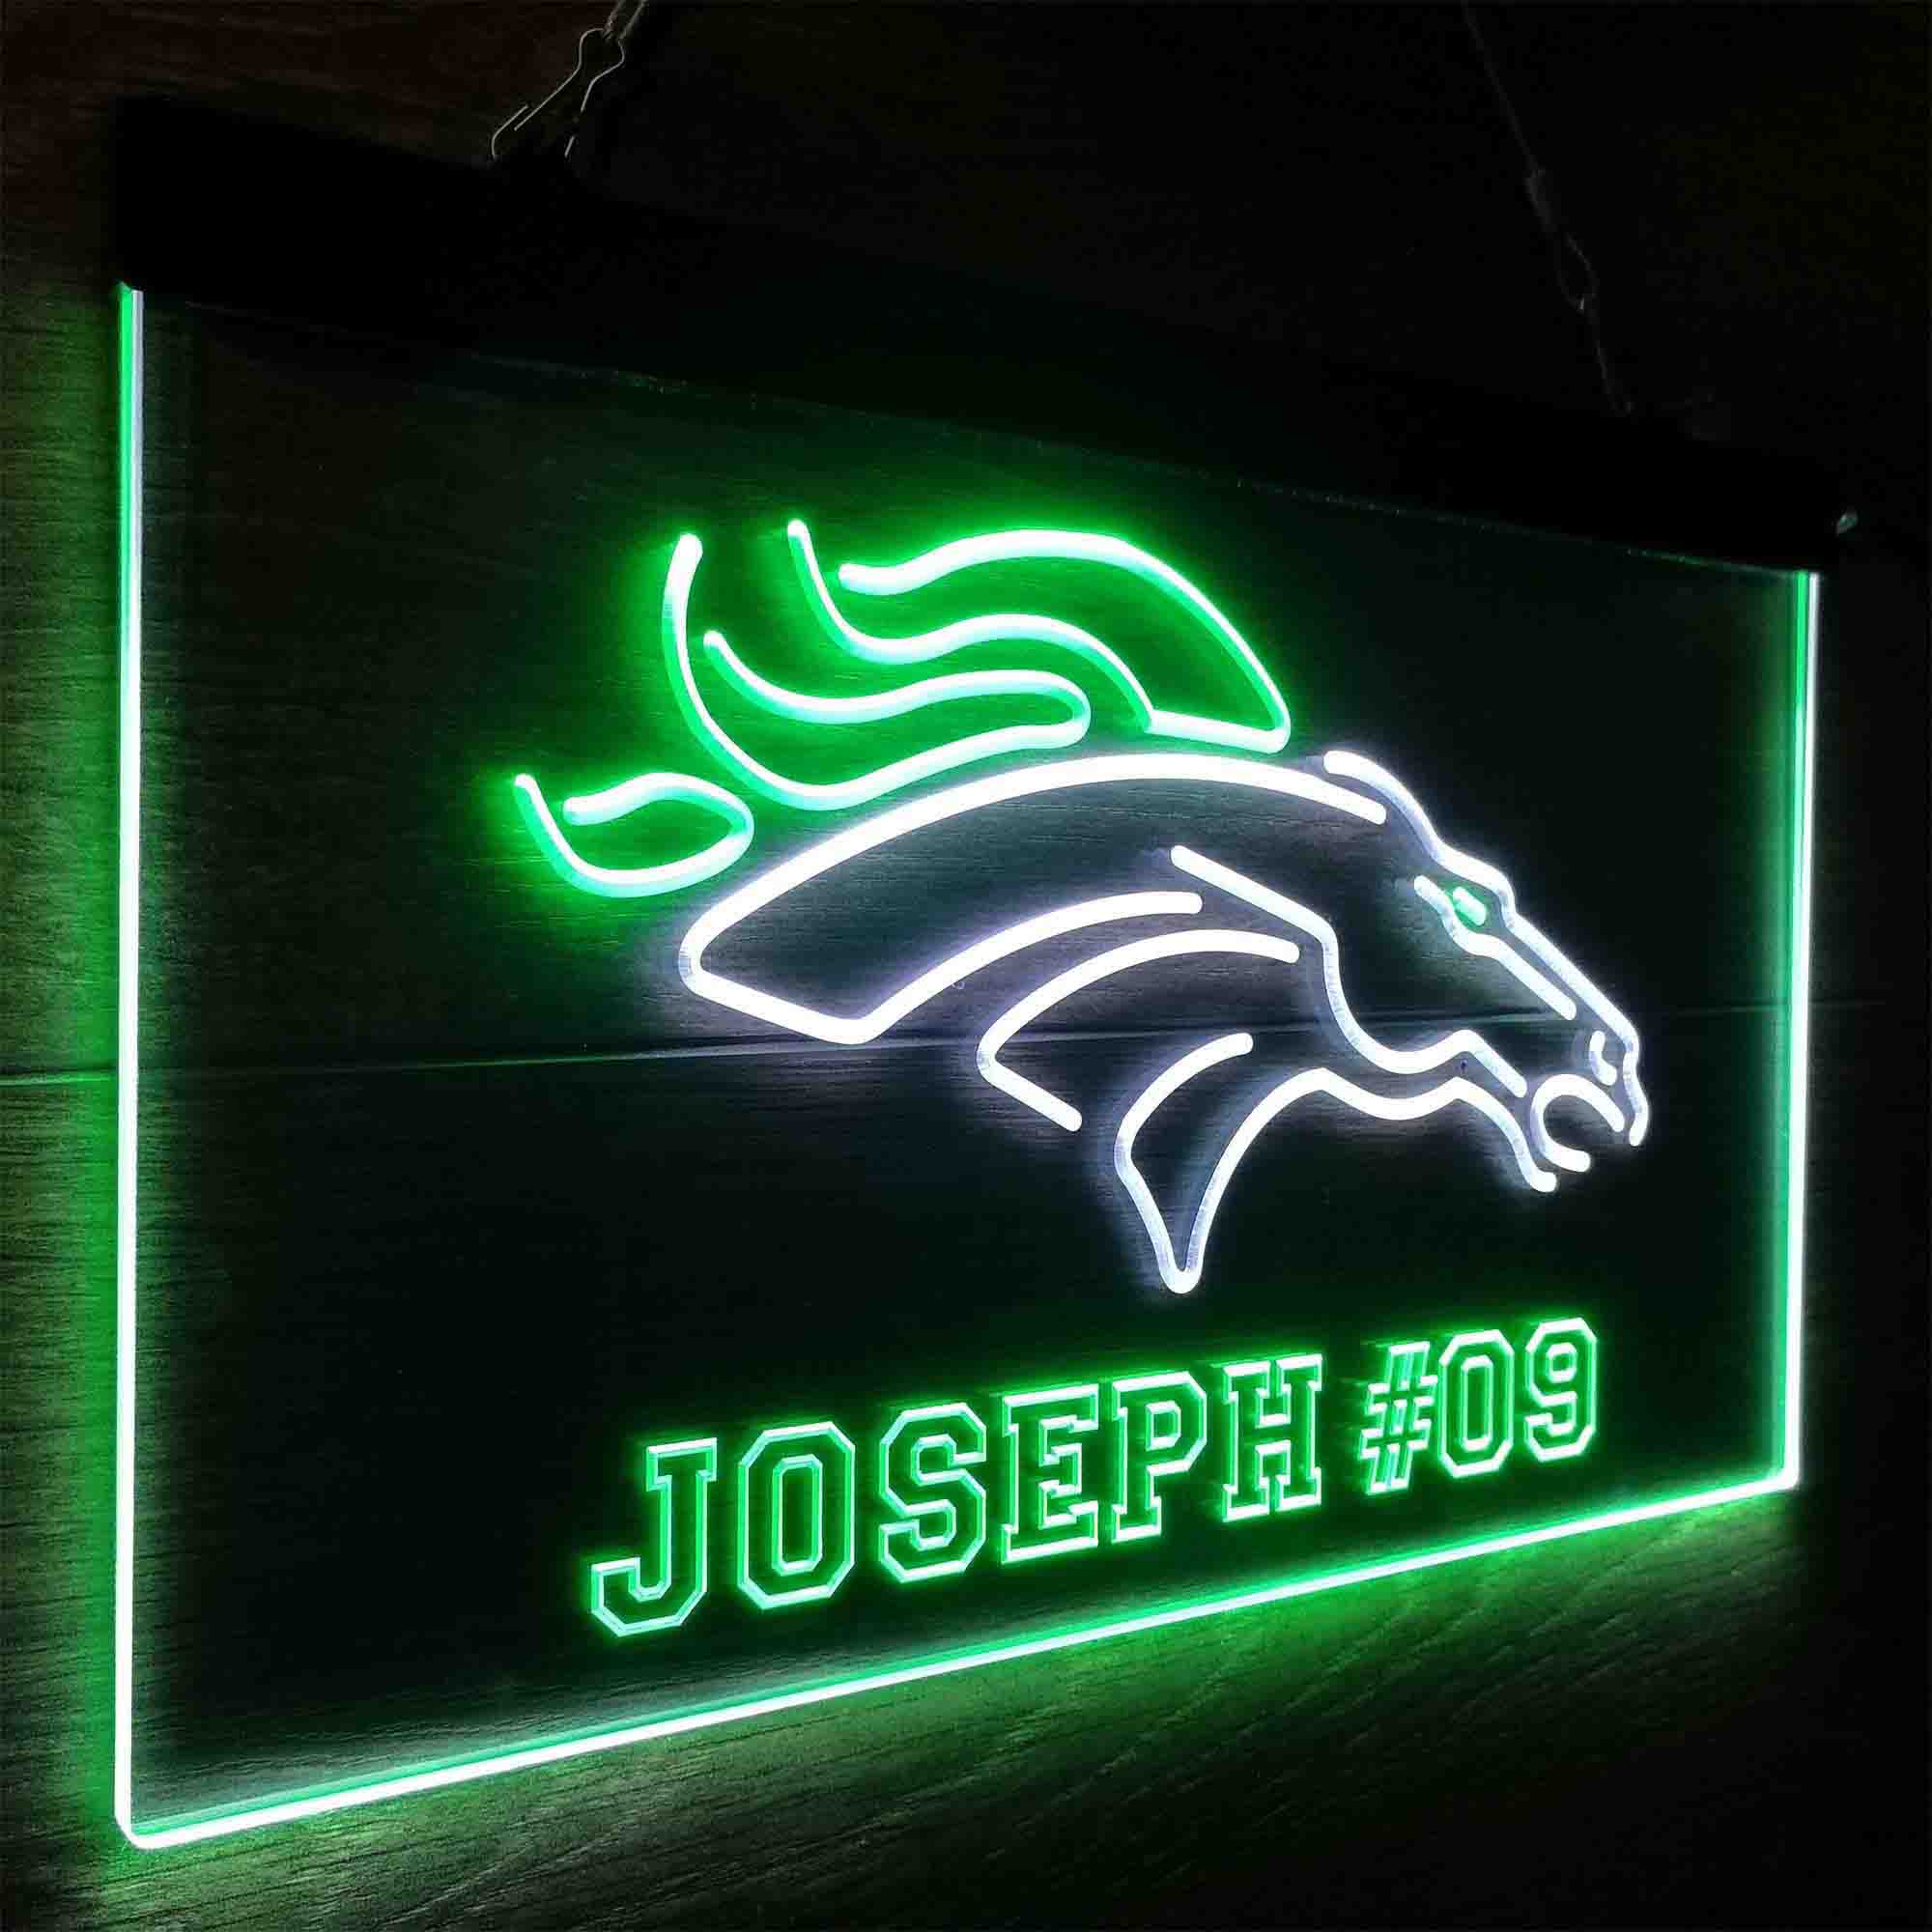 Personalized Denver Broncos Team Number Neon-Like LED Sign - ProLedSign